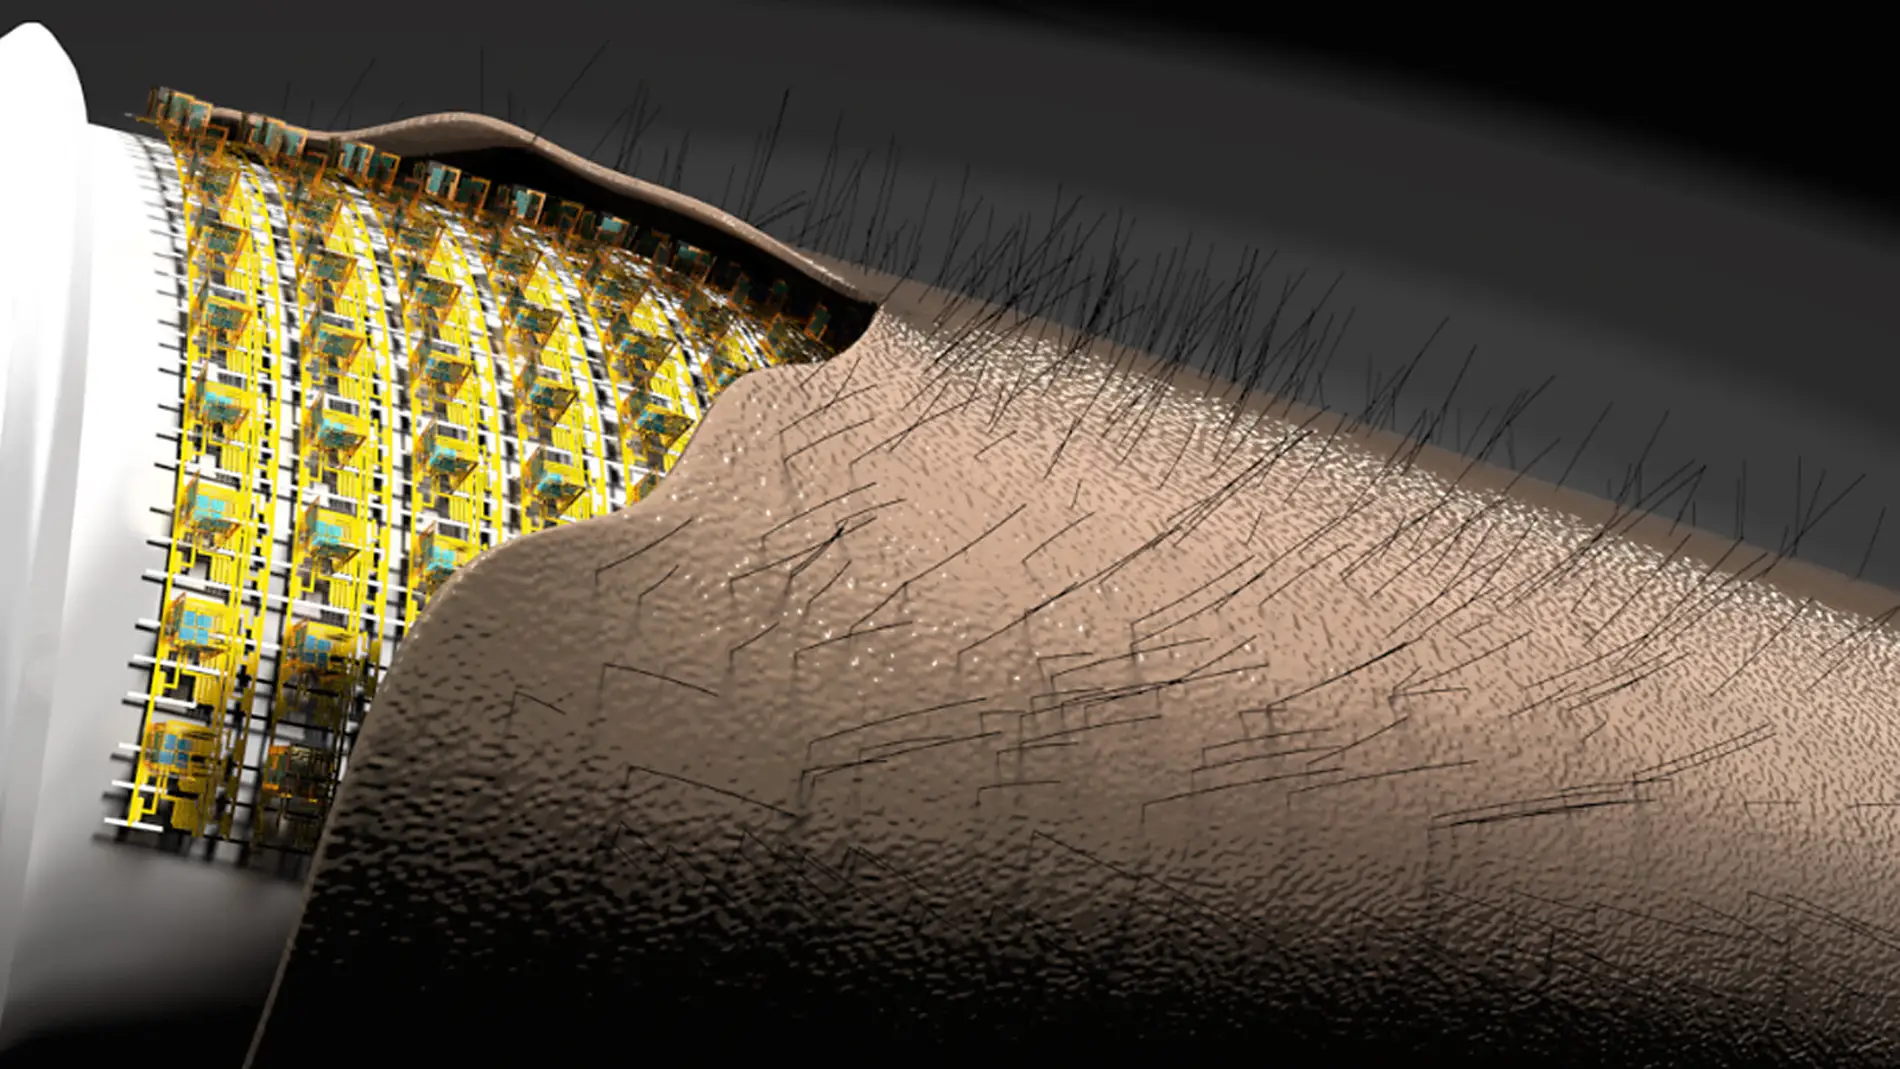 Crean una piel electrónica con tacto peludo